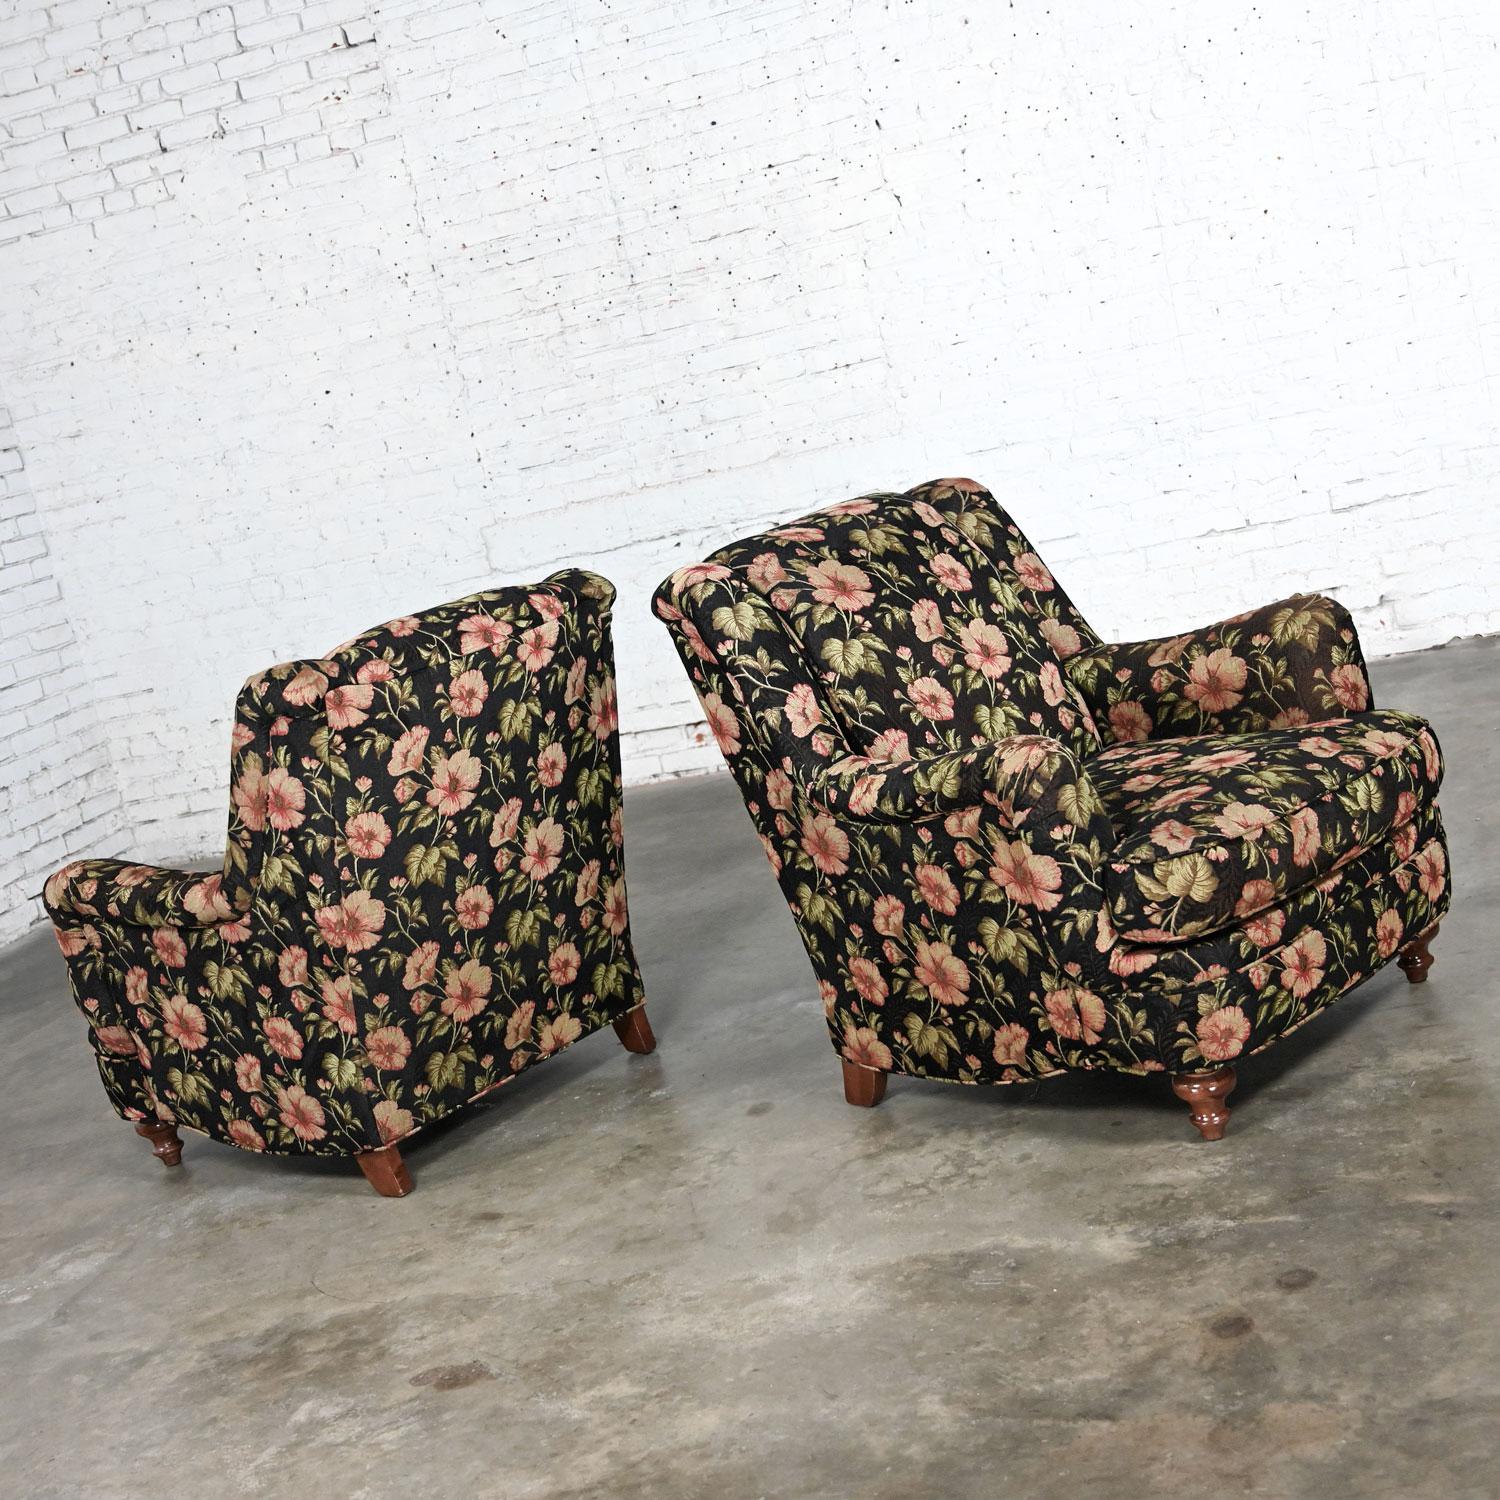 Charmante paire de chaises longues de style Cottagecore de la fin du 20e siècle, fabriquées par Sam Moore Furniture, une division de Hooker Furniture. Byit, en gardant à l'esprit qu'il s'agit d'une pièce vintage et non pas neuve, qui présentera donc